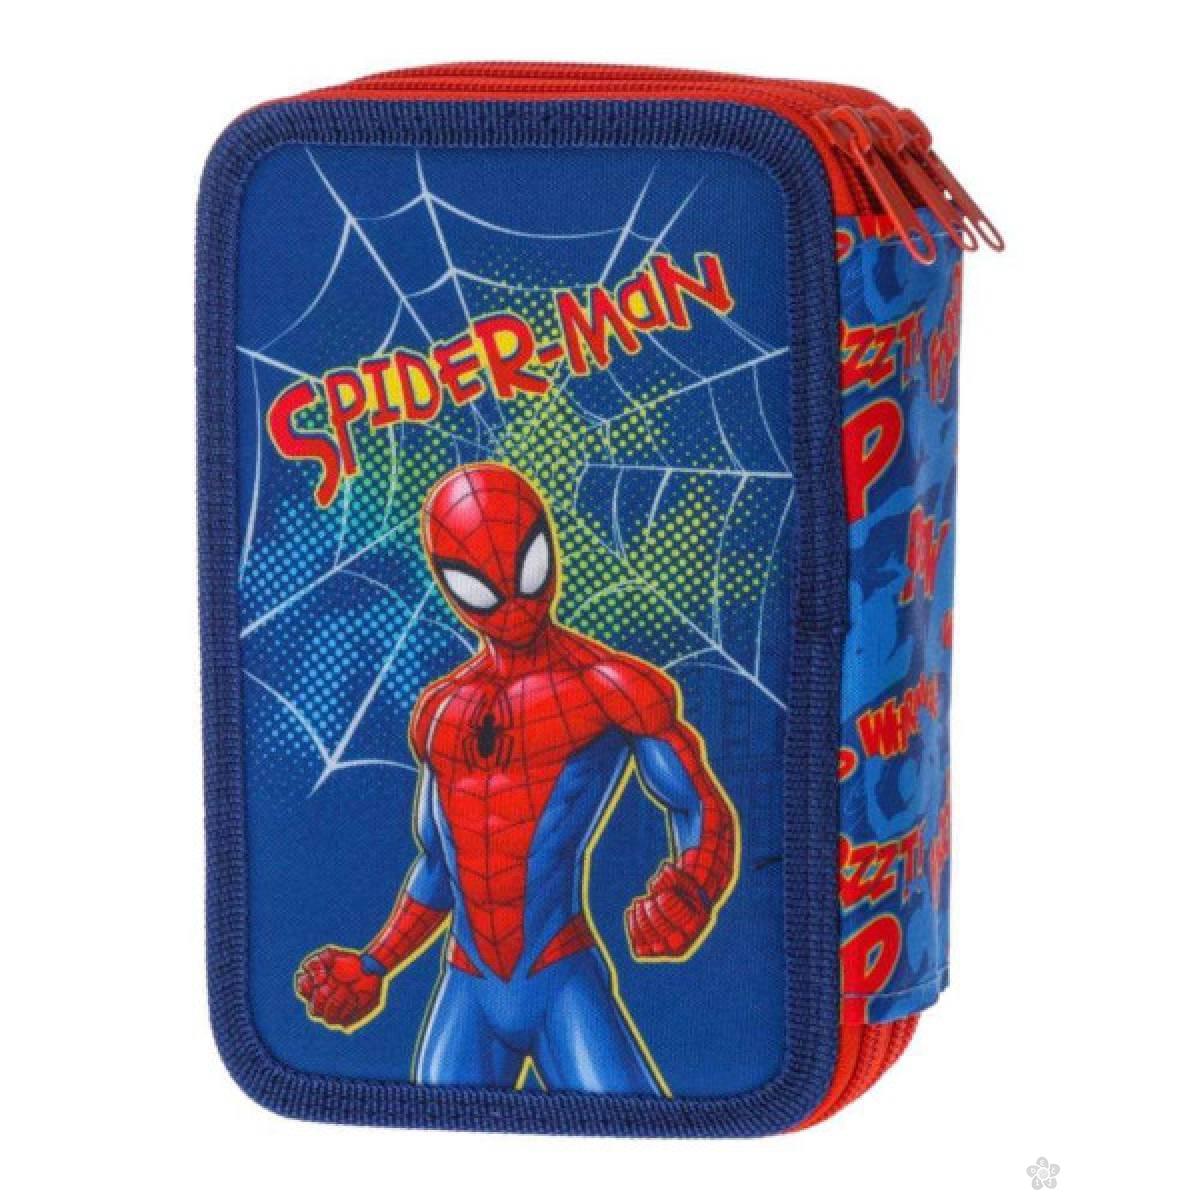 Pernica puna 3 zipa Spiderman Whoo Hoo 326463 